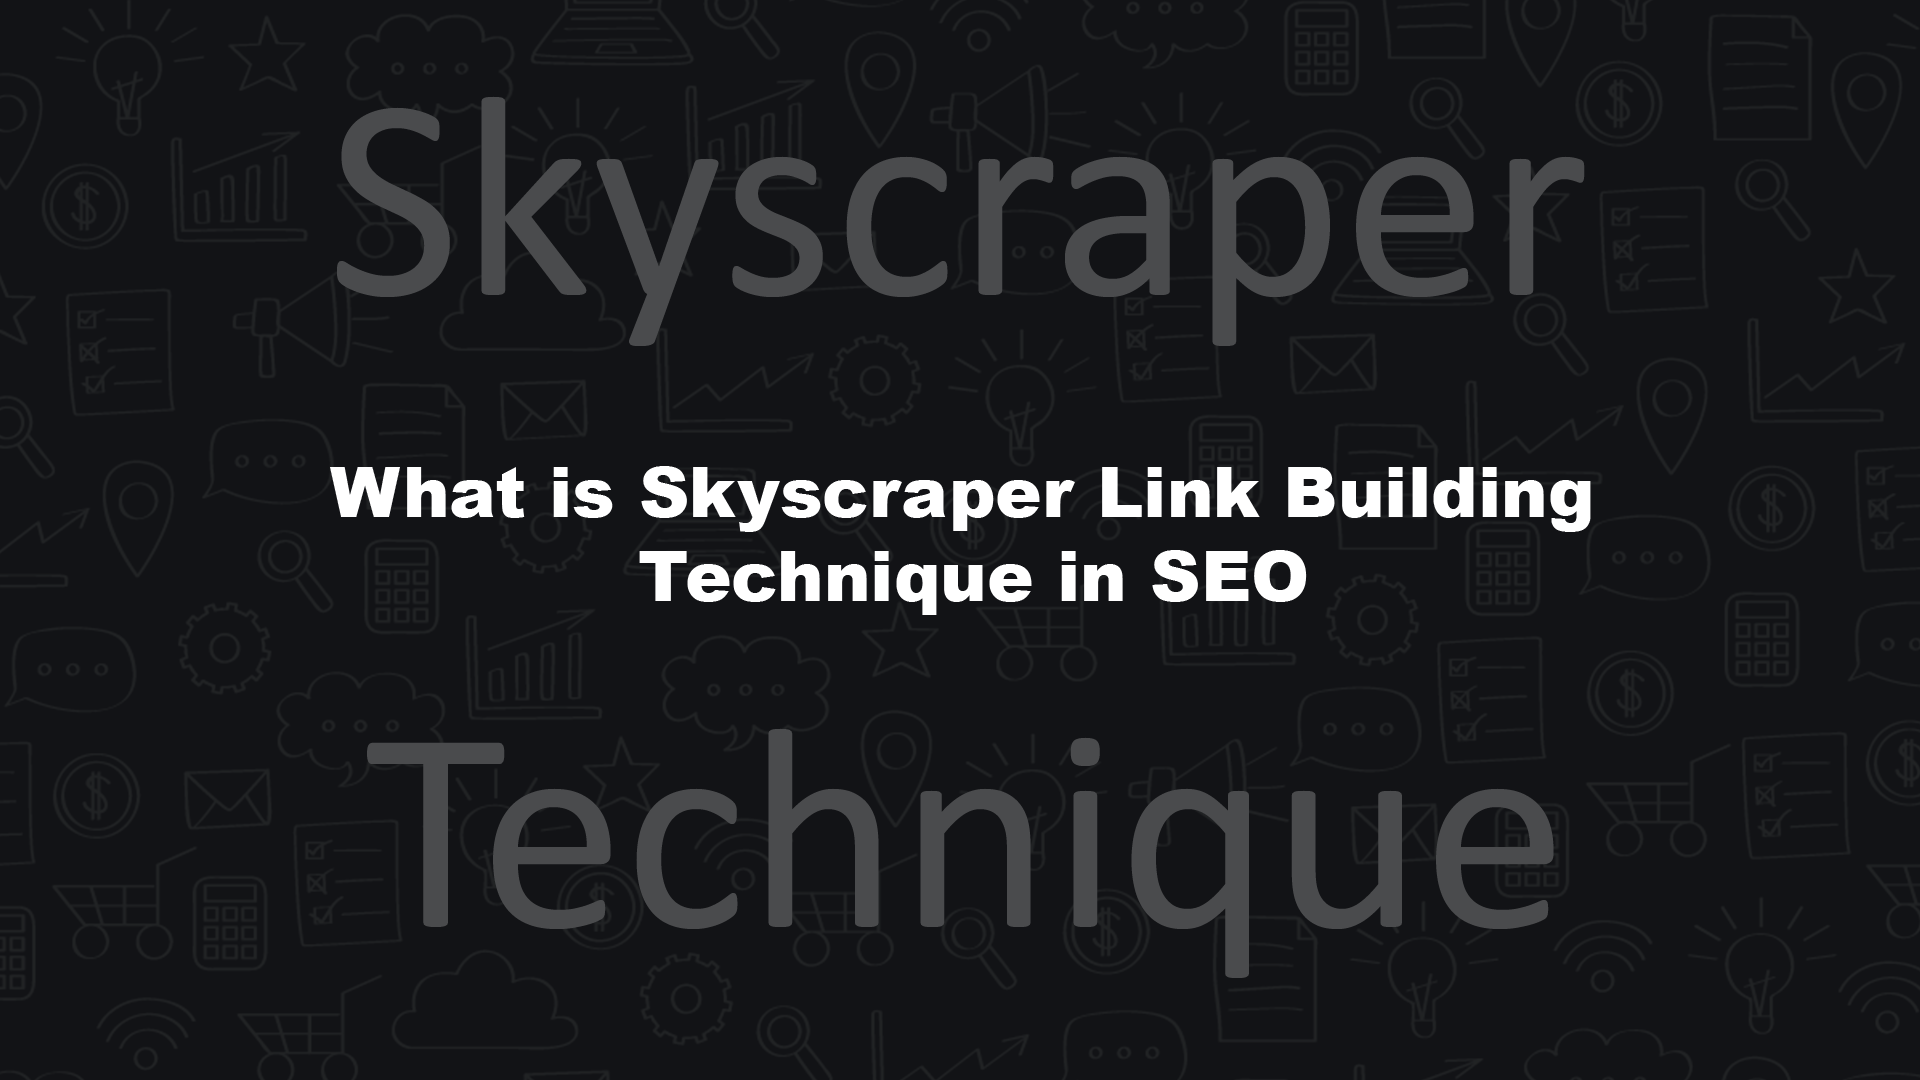 Skyscraper Link Building Technique in SEO